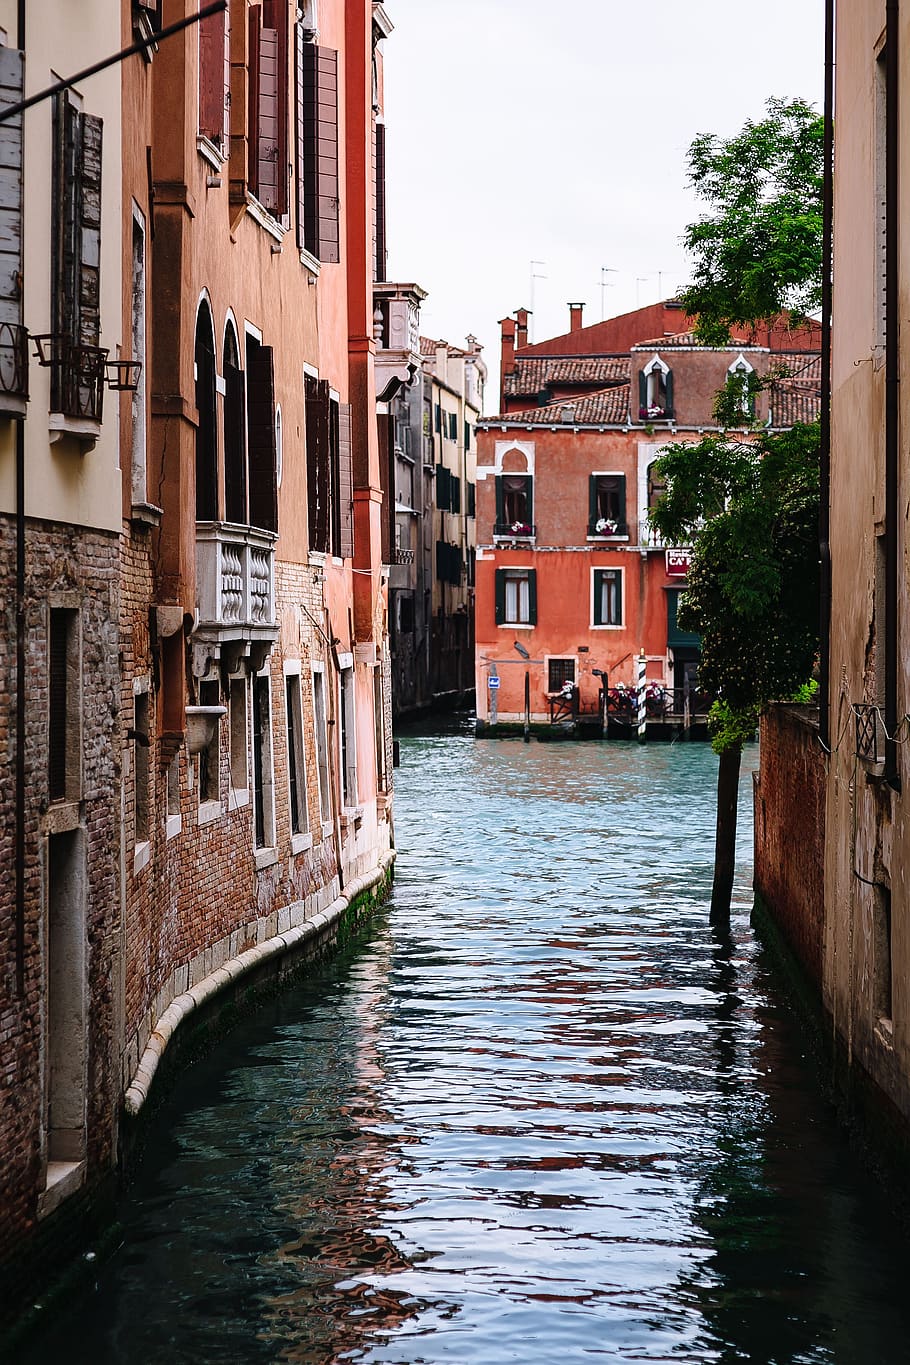 férias, arquitetura, edifícios, cidade velha, Europa, italiano, Itália, veneto, venezia, mediterrâneo